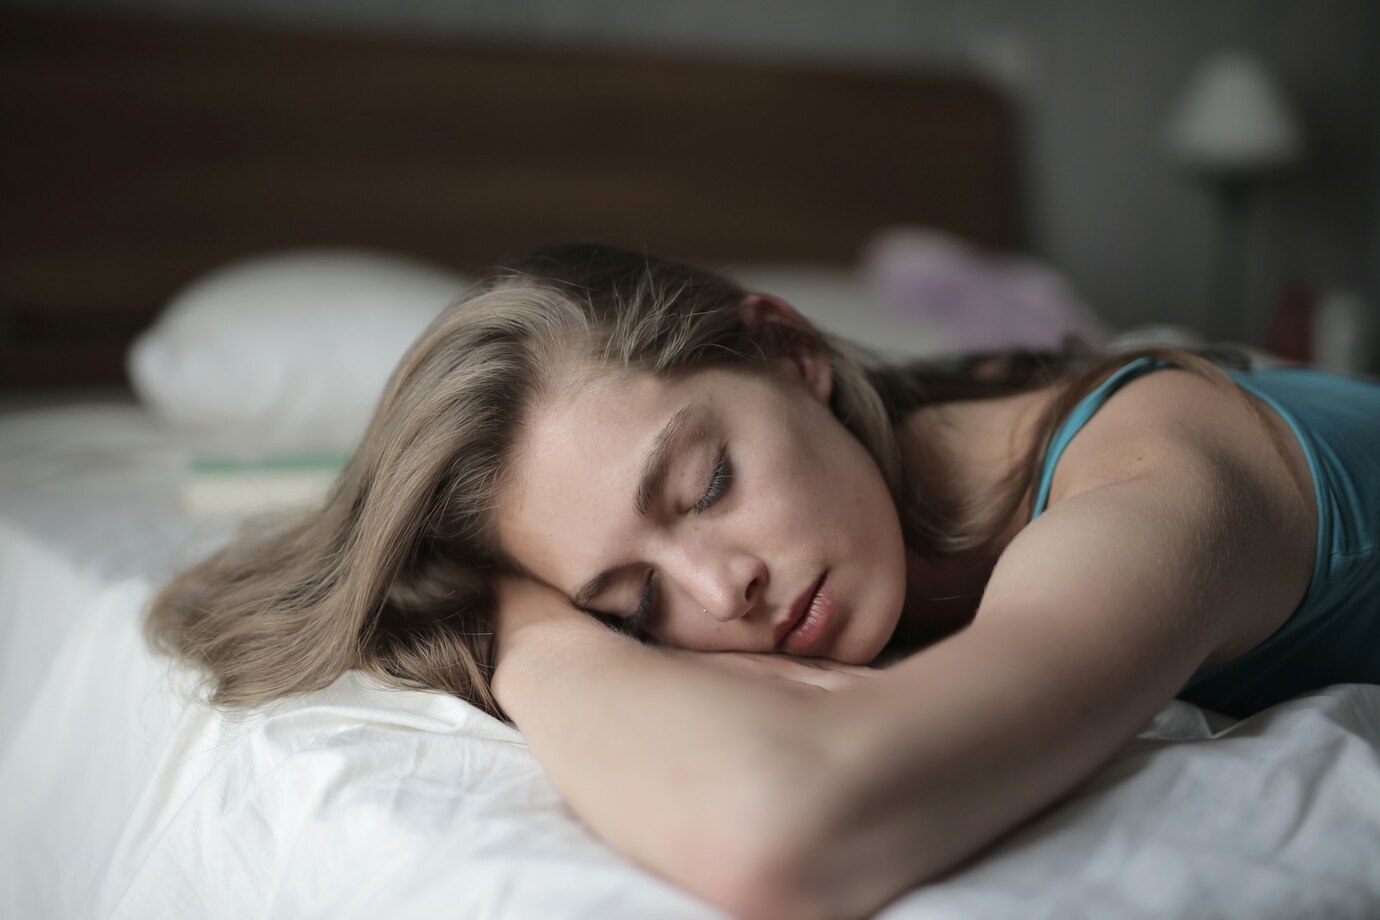 cbg alvászavar esetén mikor nyújt megoldást?